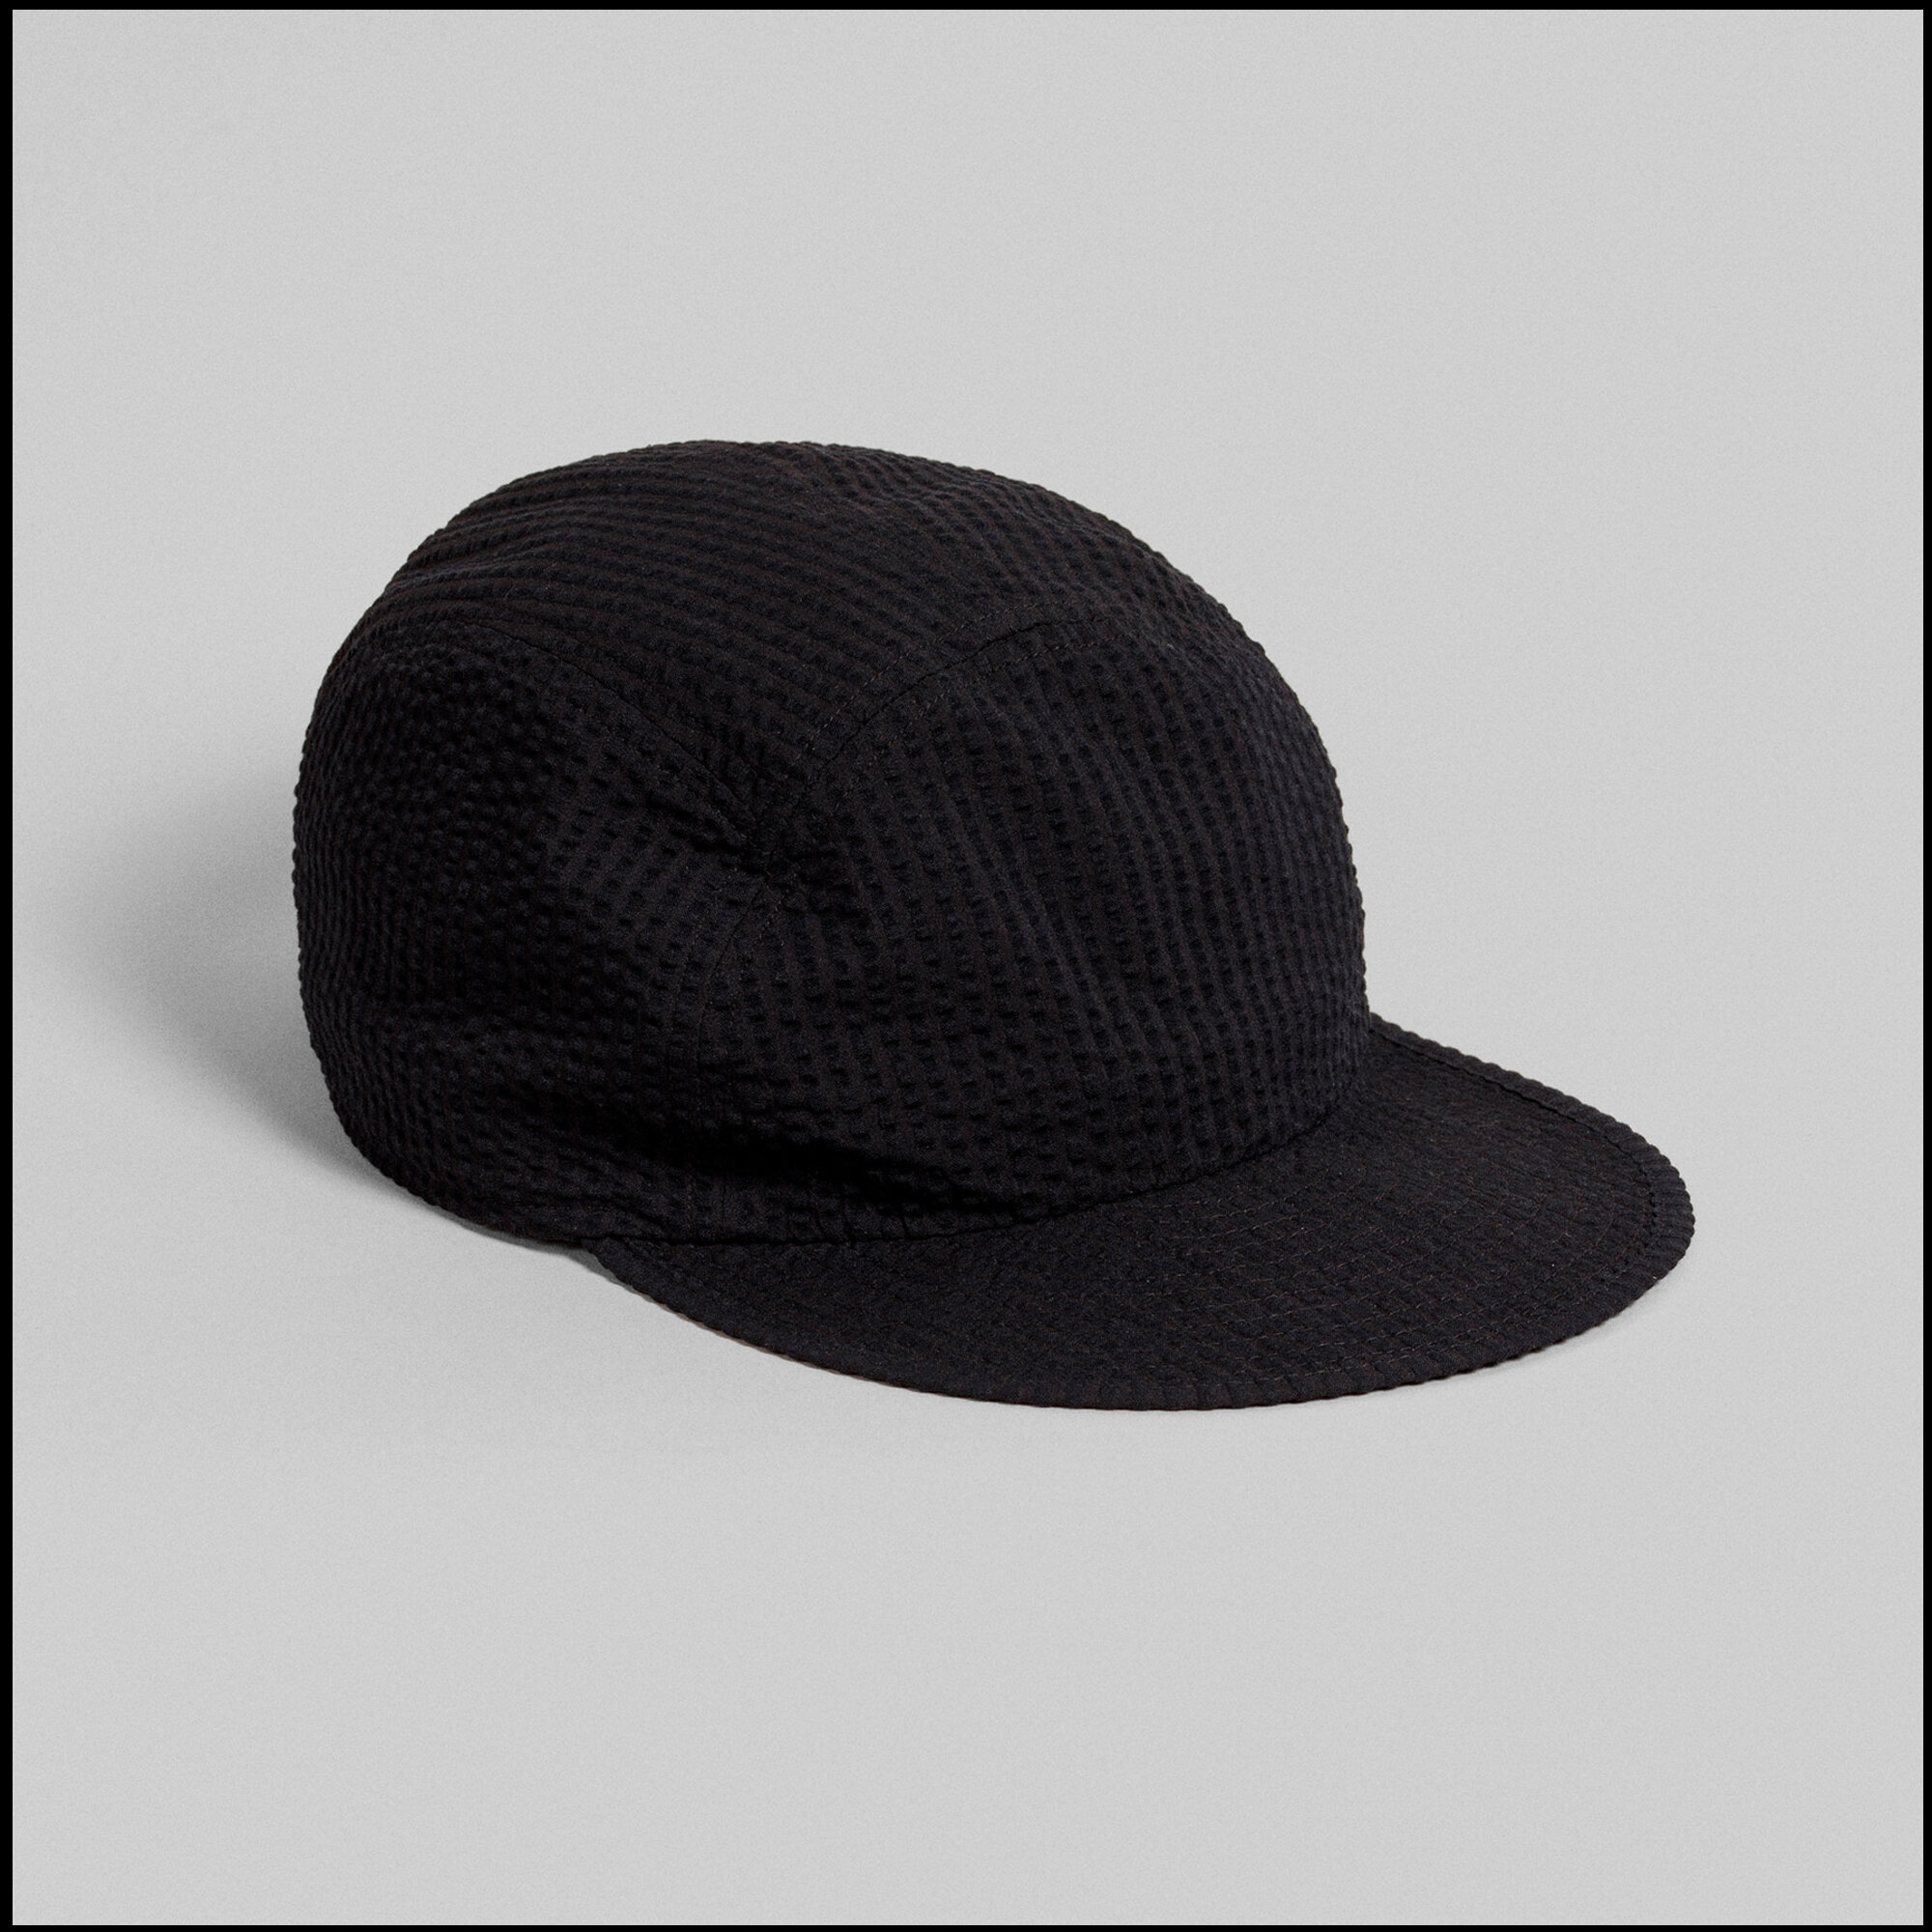 MARINA cap by Arpenteur in Black seersucker color